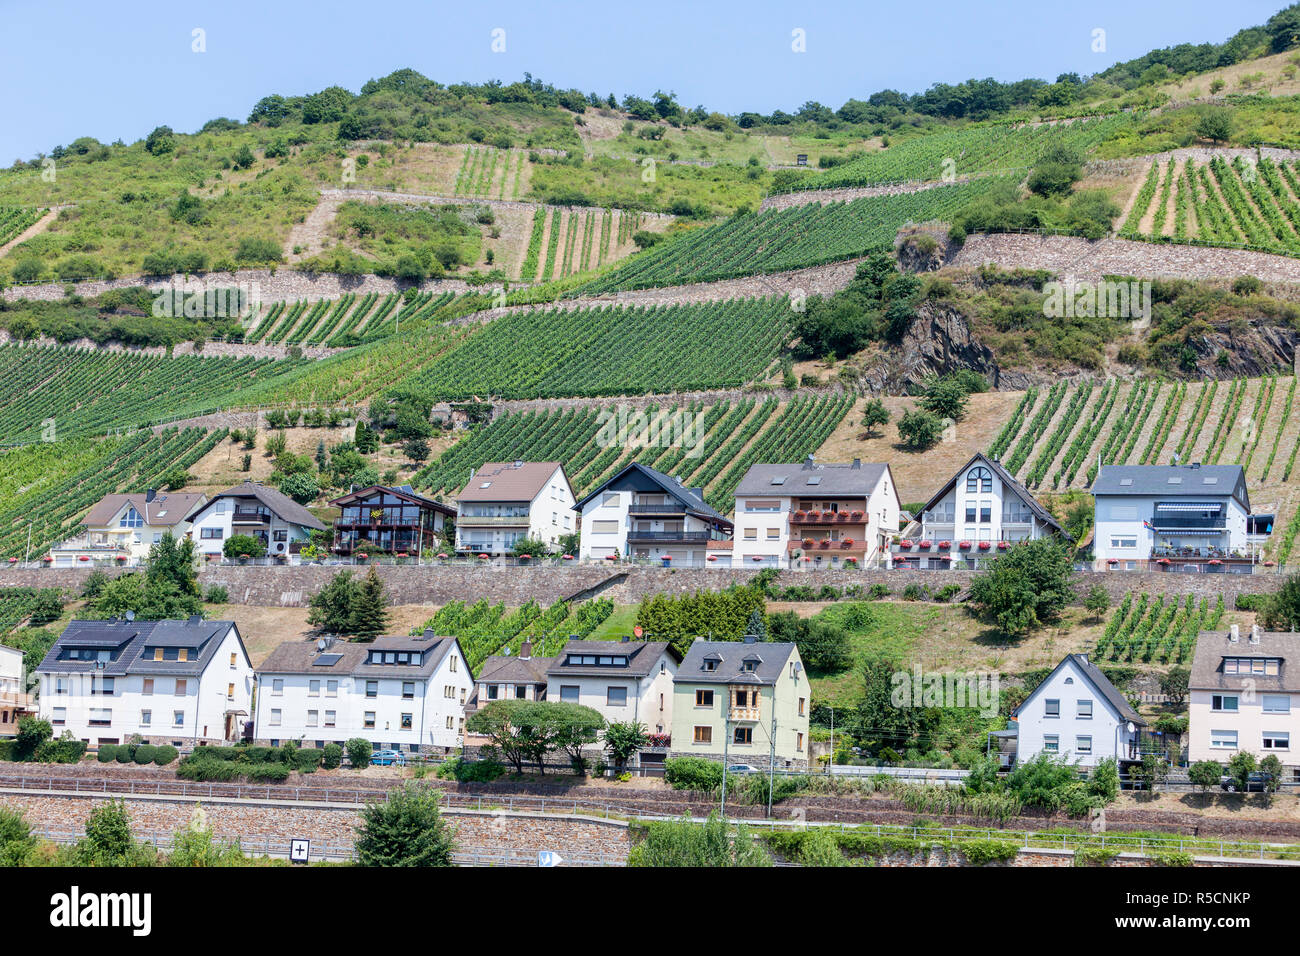 La vallée du Rhin, Lorchhausen, Allemagne. La classe moyenne typique des maisons. Banque D'Images